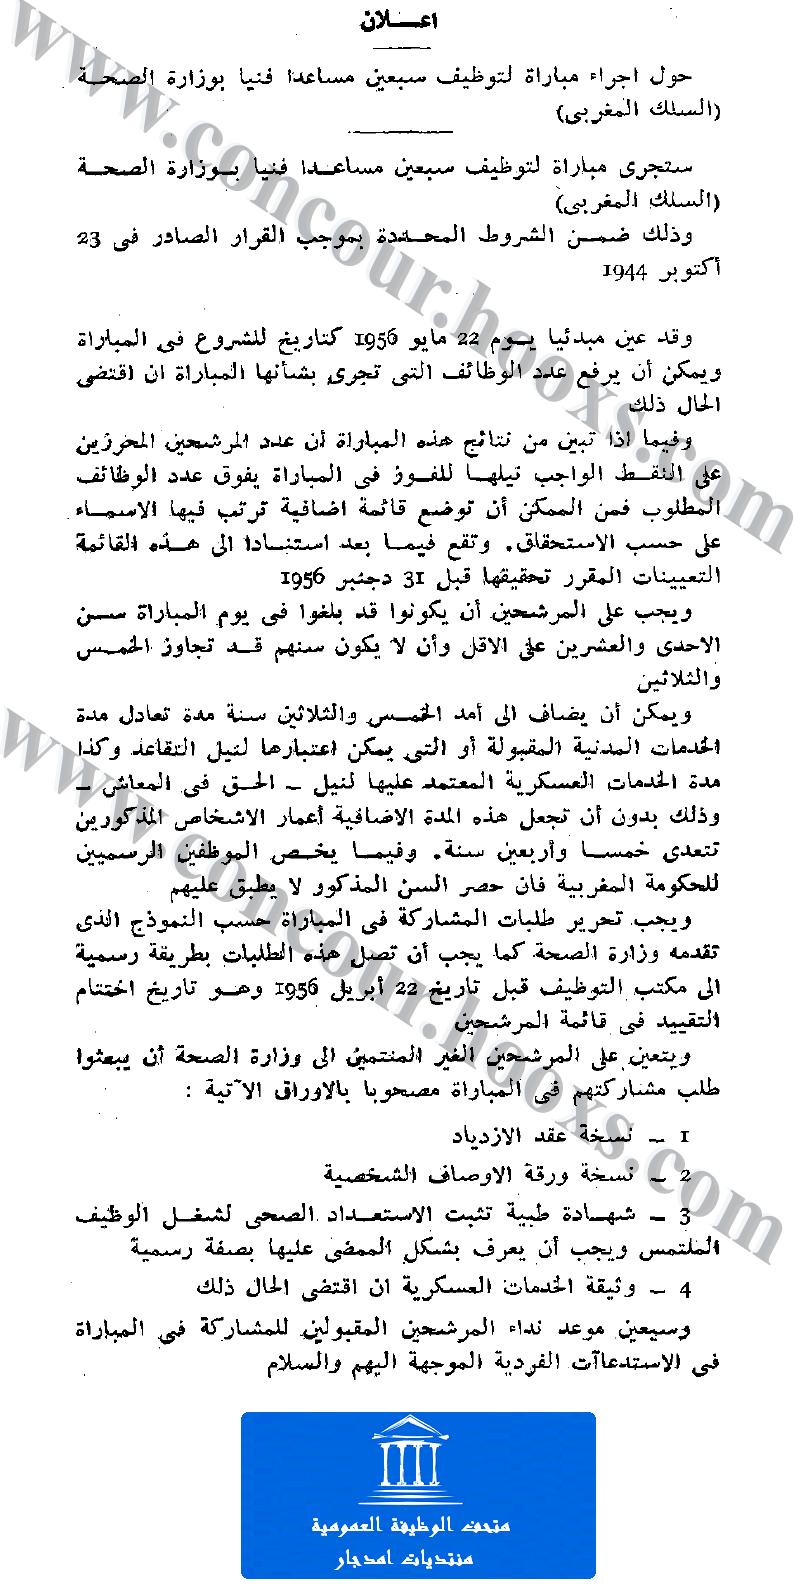 اعلان حول اجراء مبارة لتوظيف سبعين مساعدا فنيا بوزارة الصحة (السلك المغربي) يوم 22 مايو 1956 Concou78